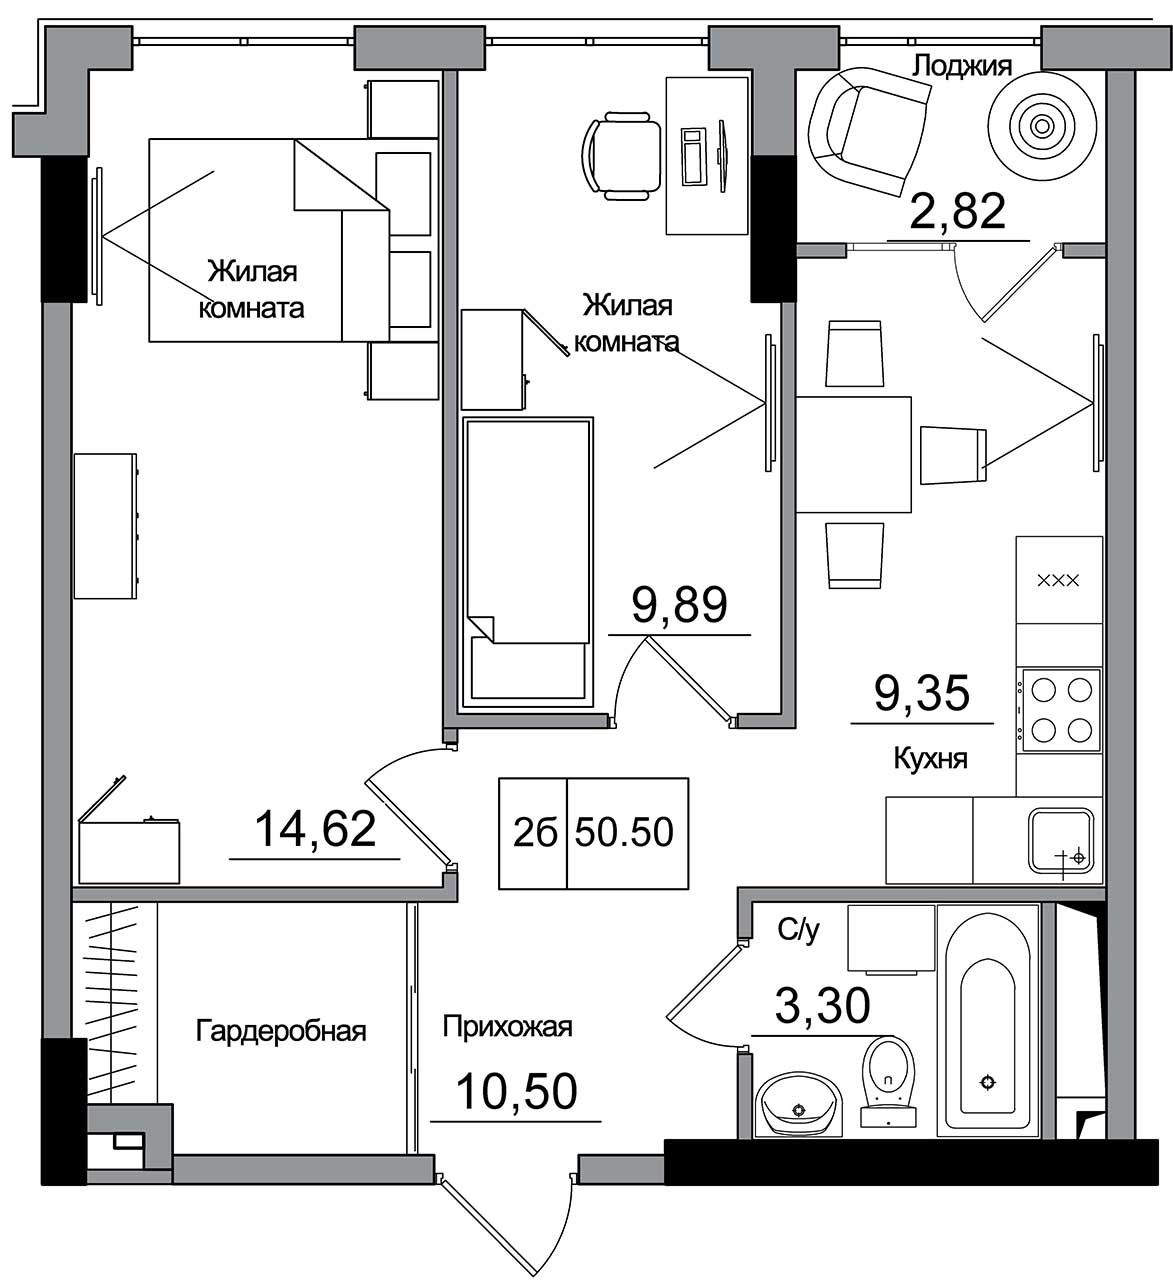 Планировка 2-к квартира площей 50.5м2, AB-16-07/00007.